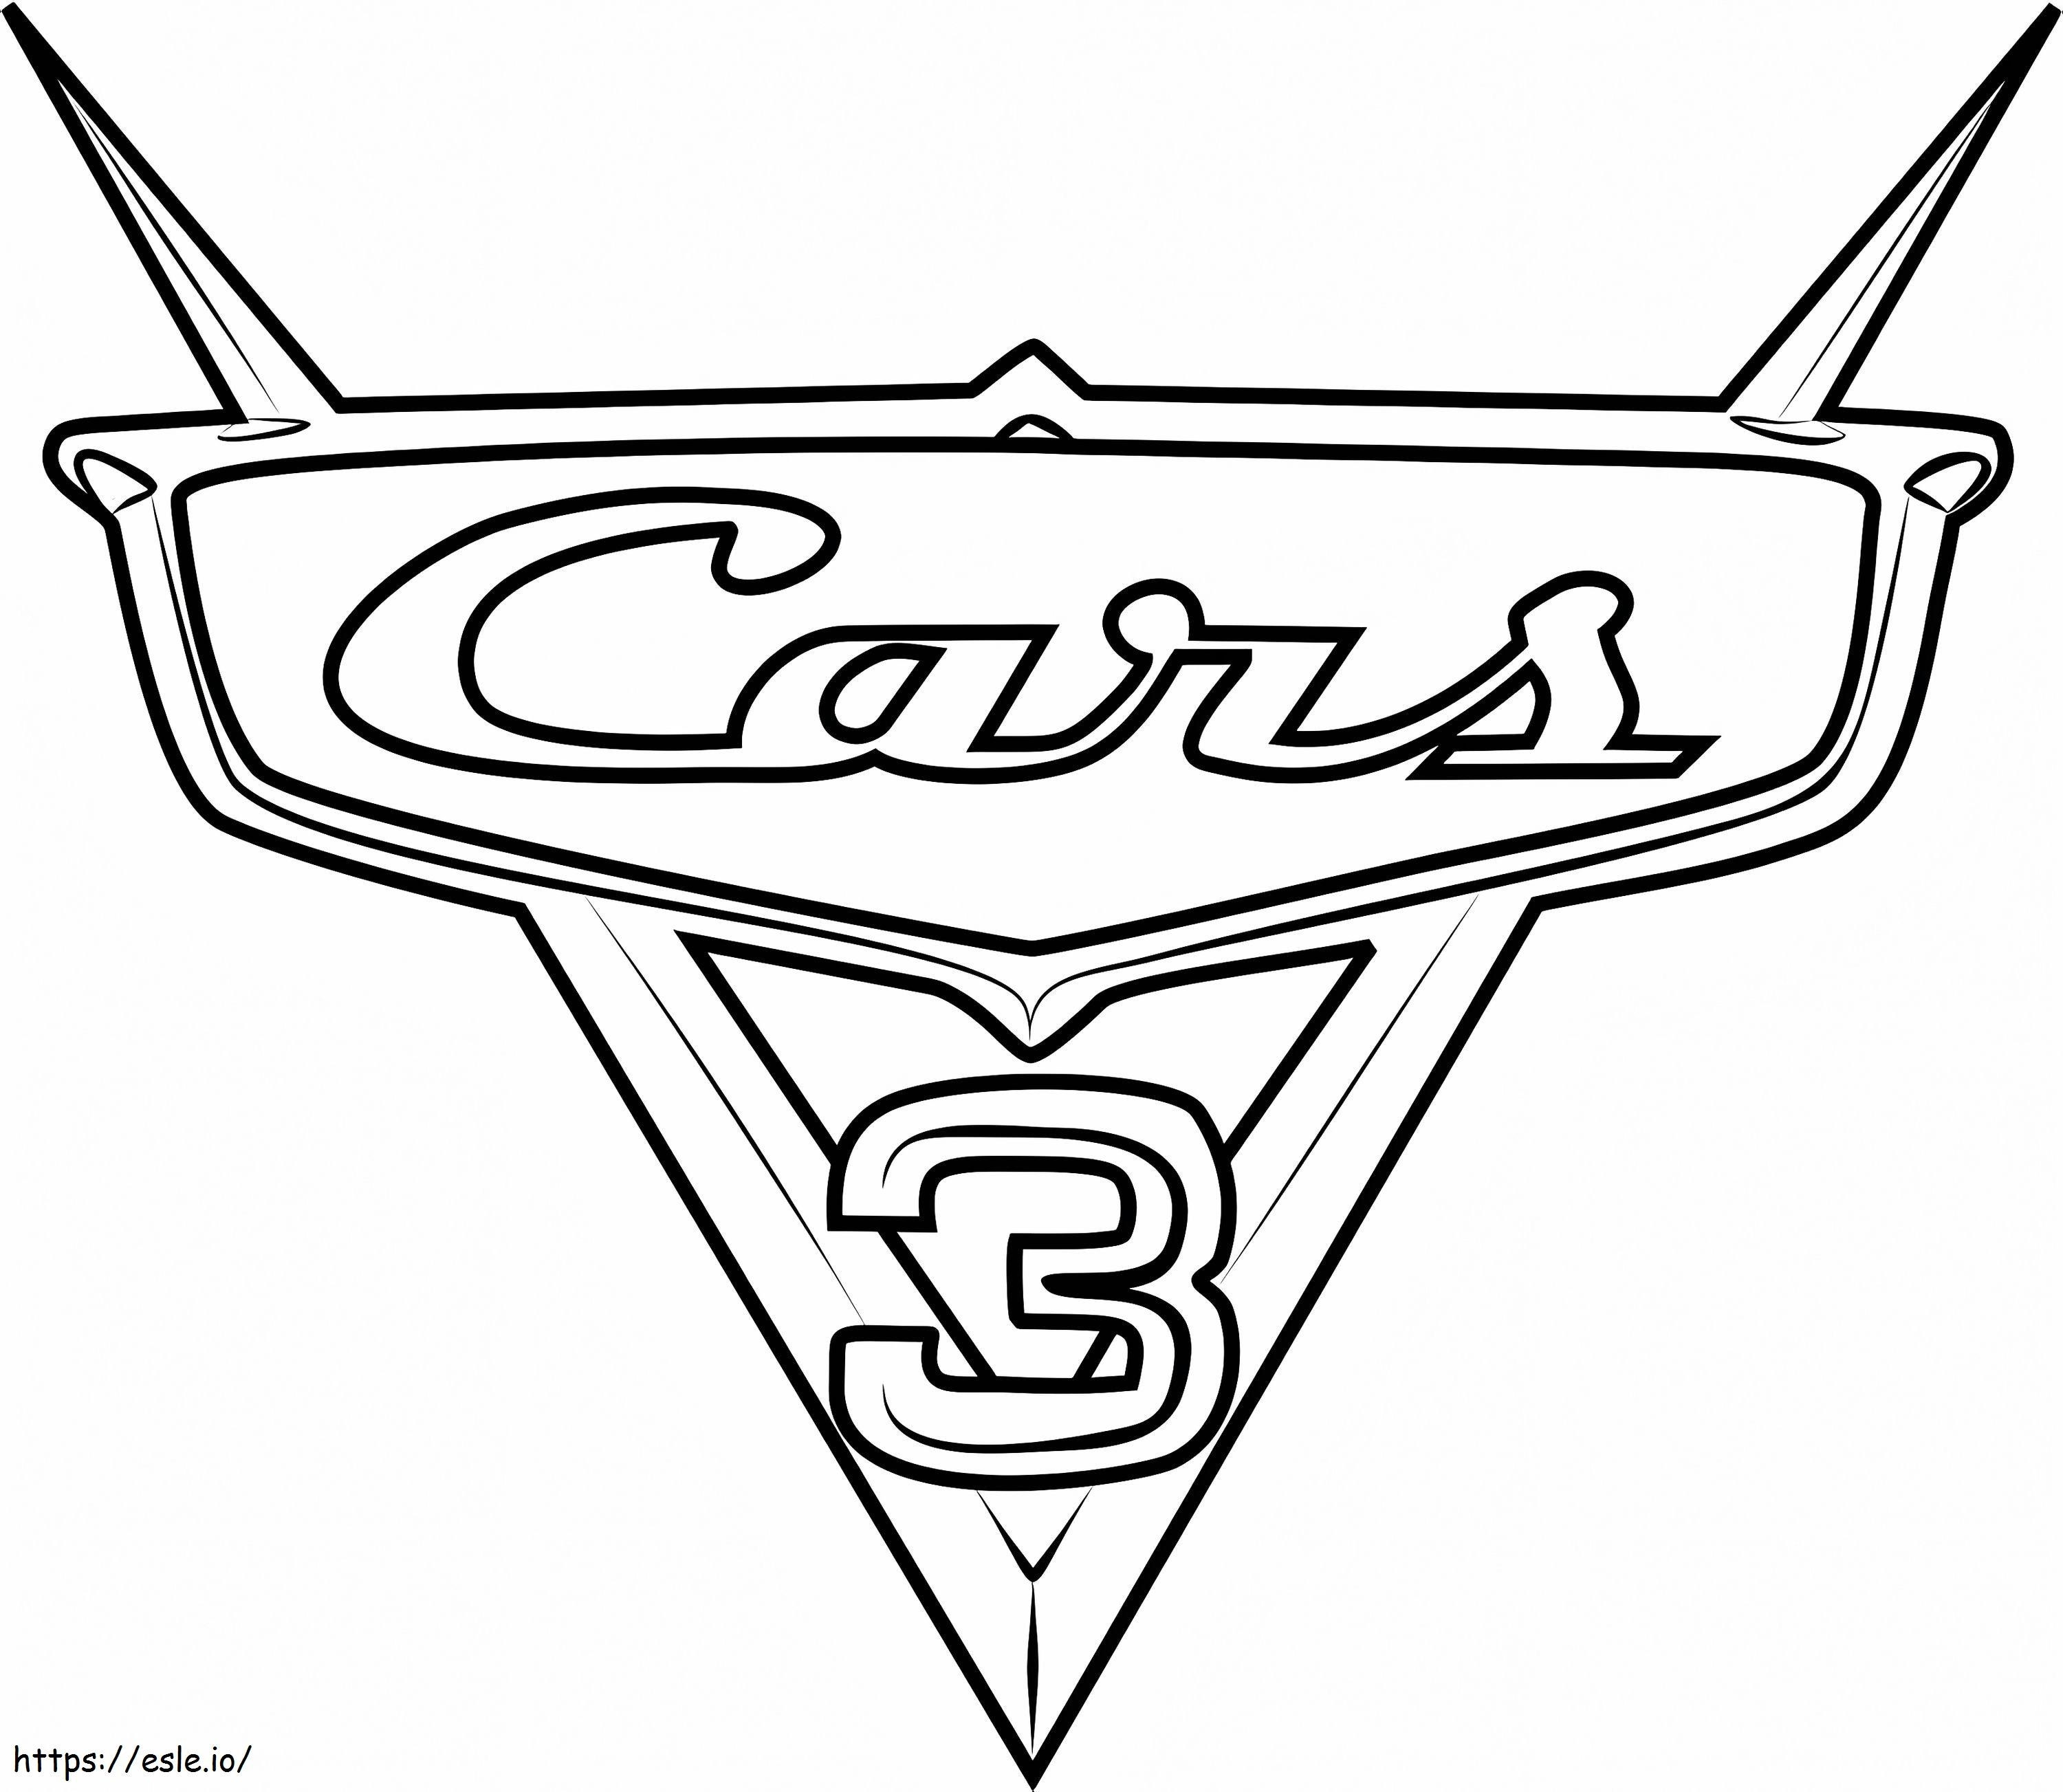  Cars 3-logo van Cars 31 kleurplaat kleurplaat